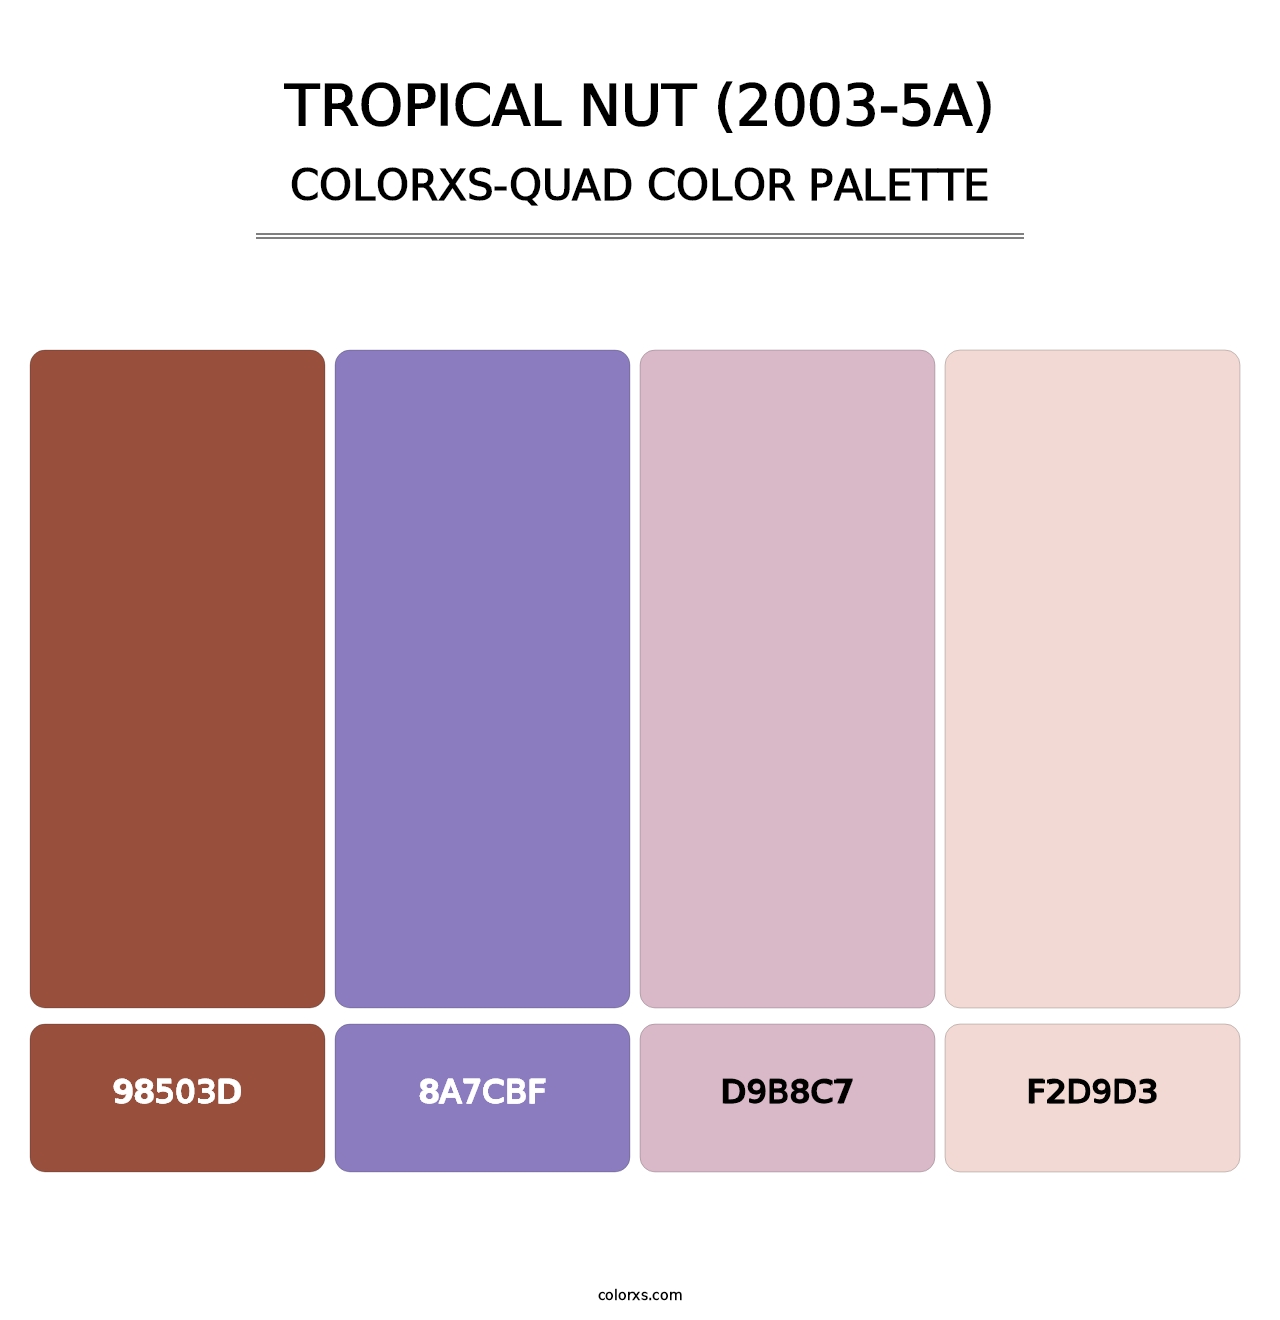 Tropical Nut (2003-5A) - Colorxs Quad Palette